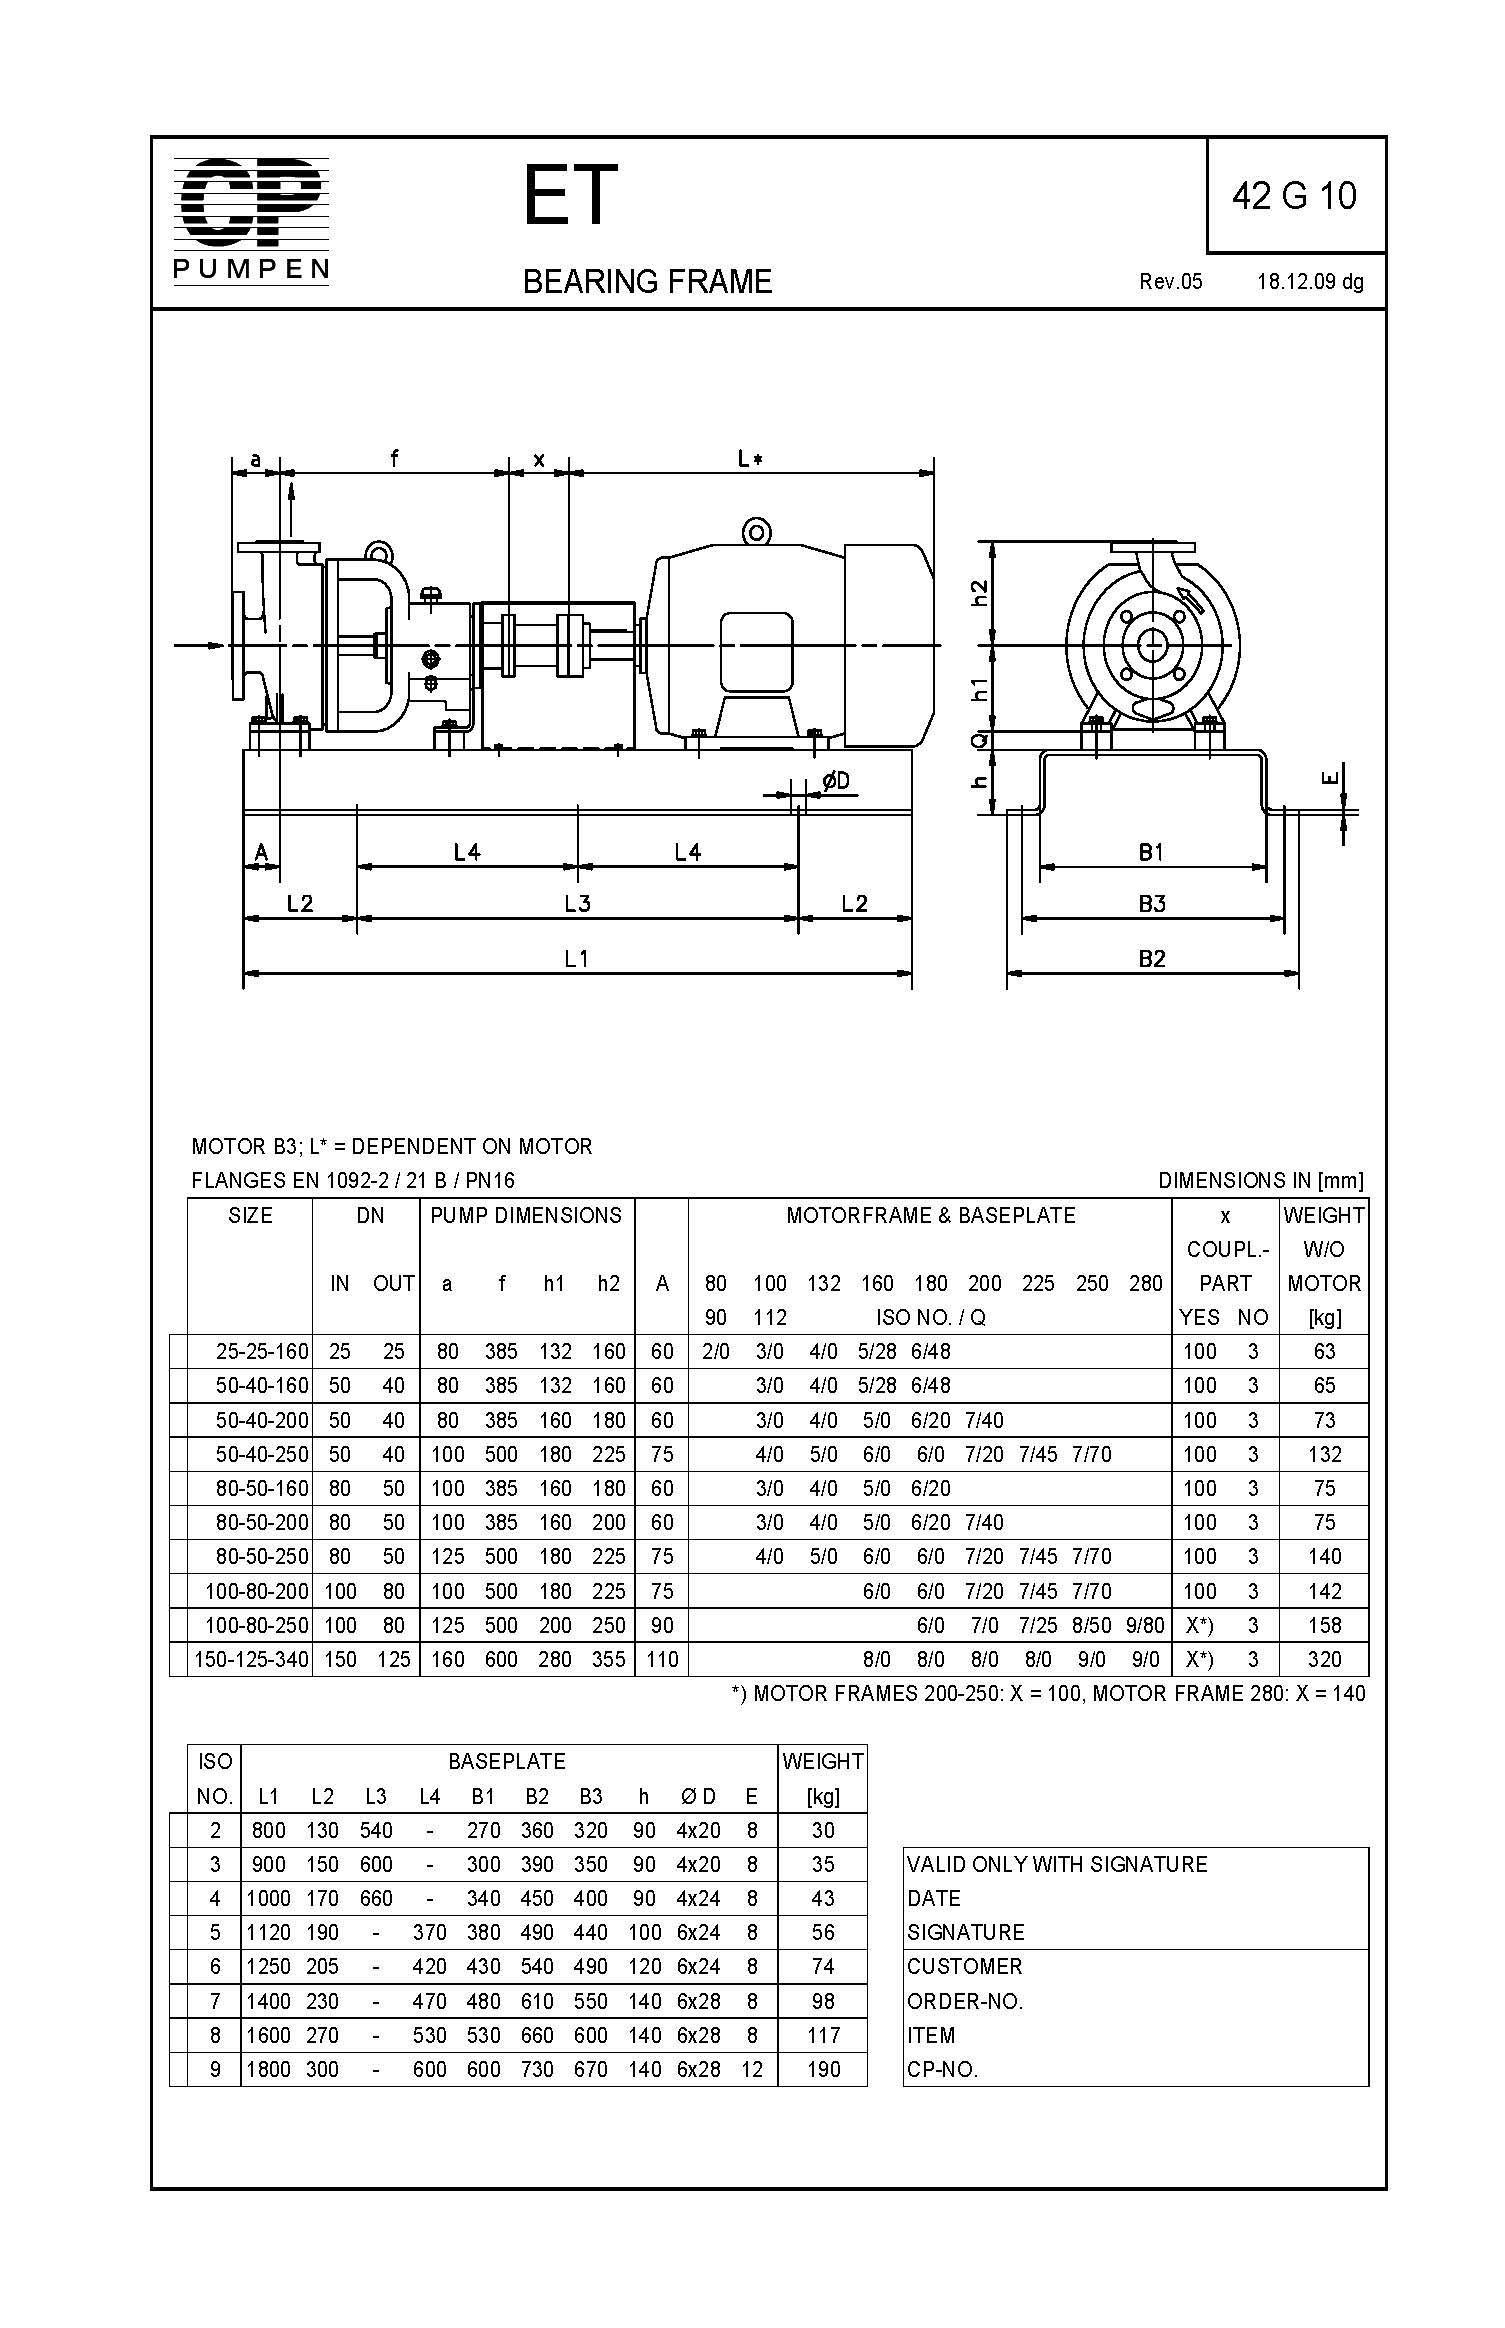 DimensionalDrawing ET Baseplate Motor 42G10 Rev05